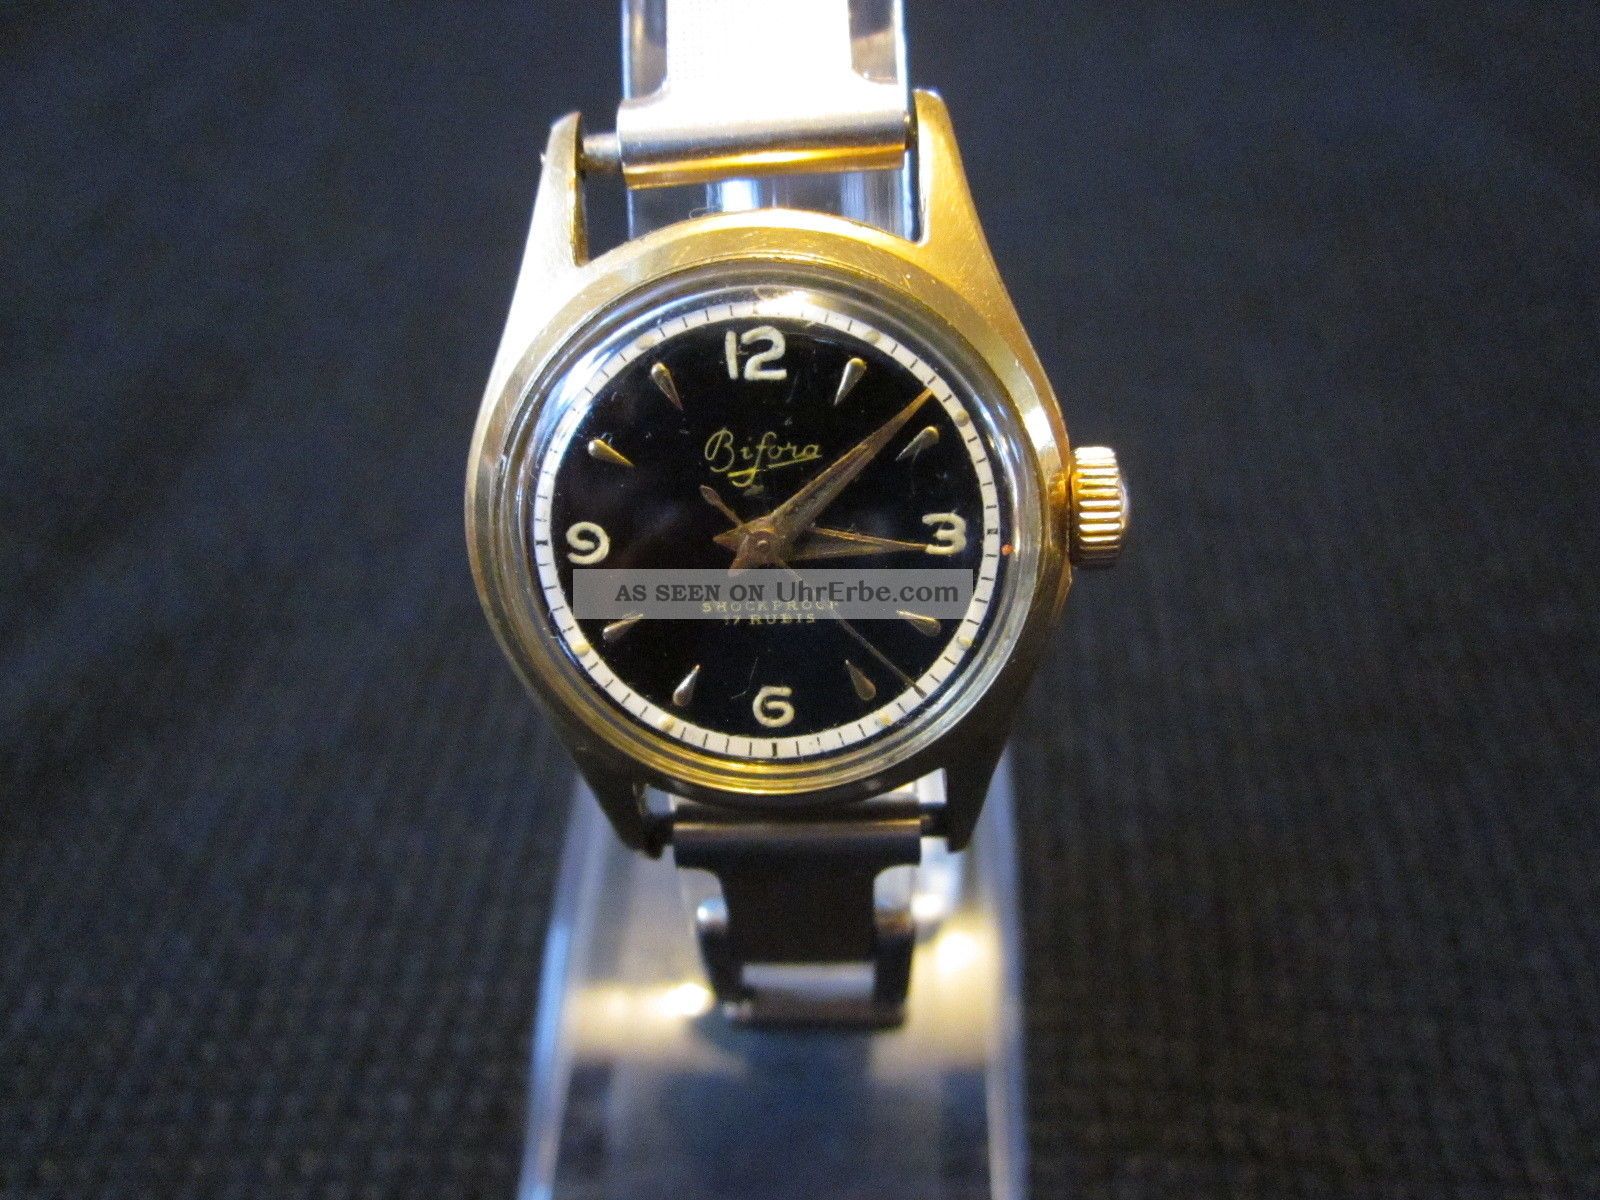 Bifora Uhr Handaufzug Hau Vergoldet 17 Rubis Walzgold Armbanduhren Bild